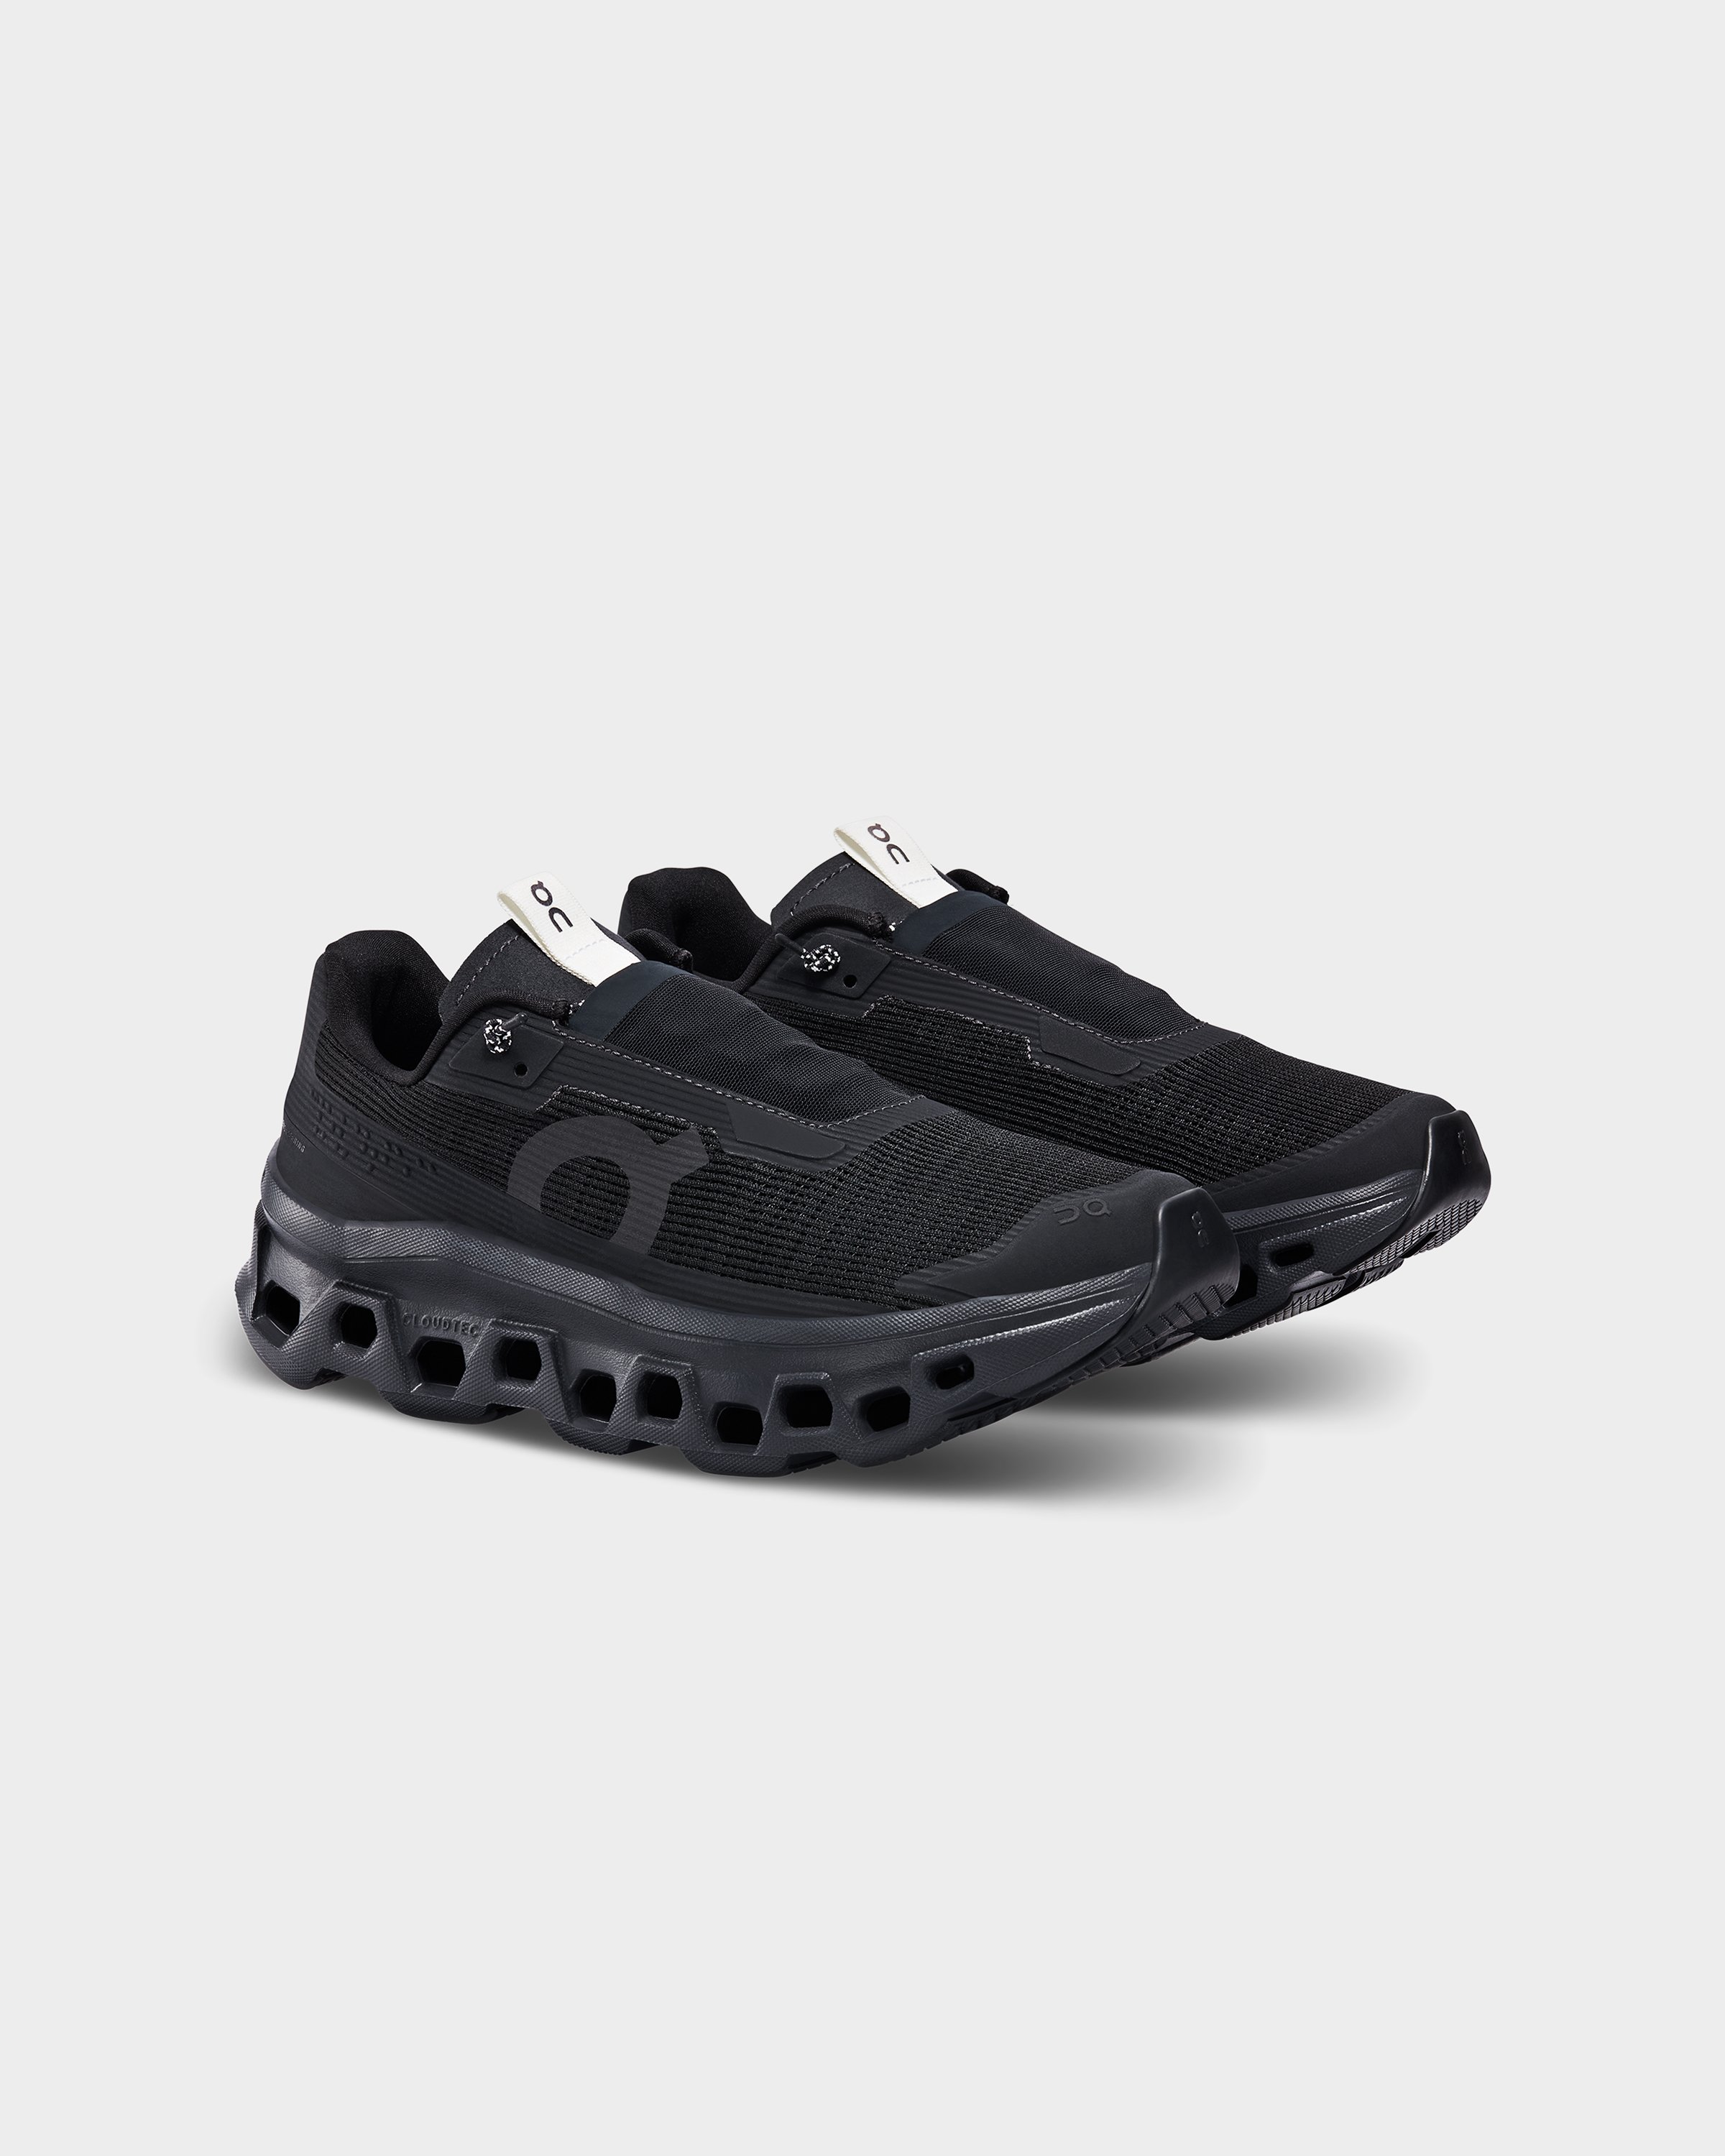 On - Cloudmonster Sensa Black - Footwear - Black - Image 3